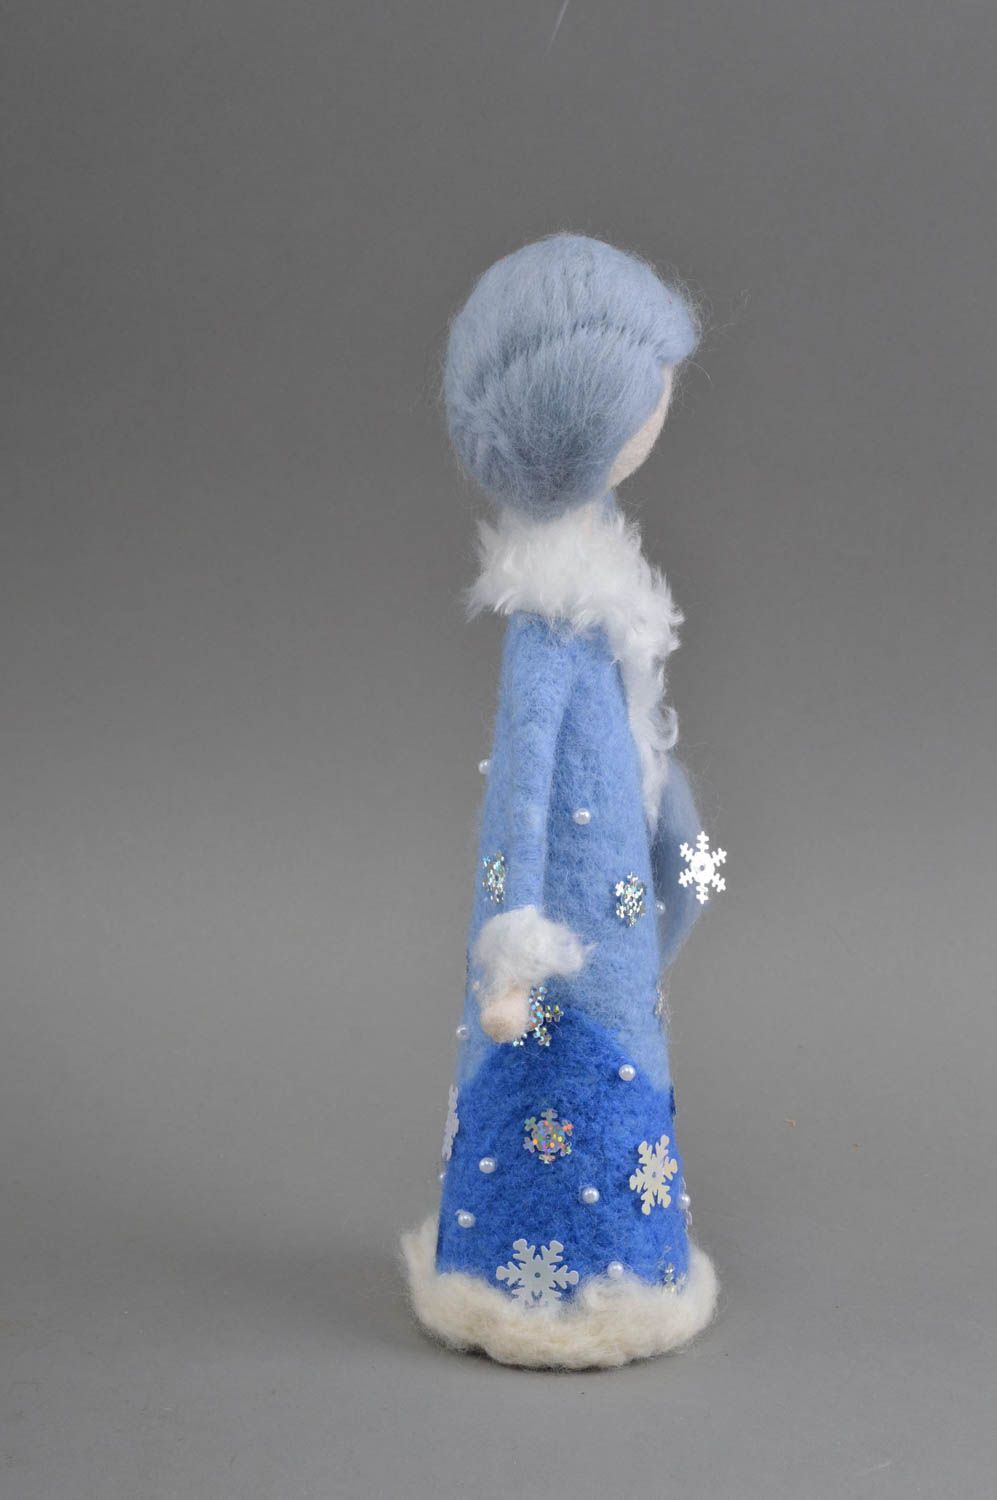 Decorative woolen toy designer handmade felted figurine stylish interior doll photo 2